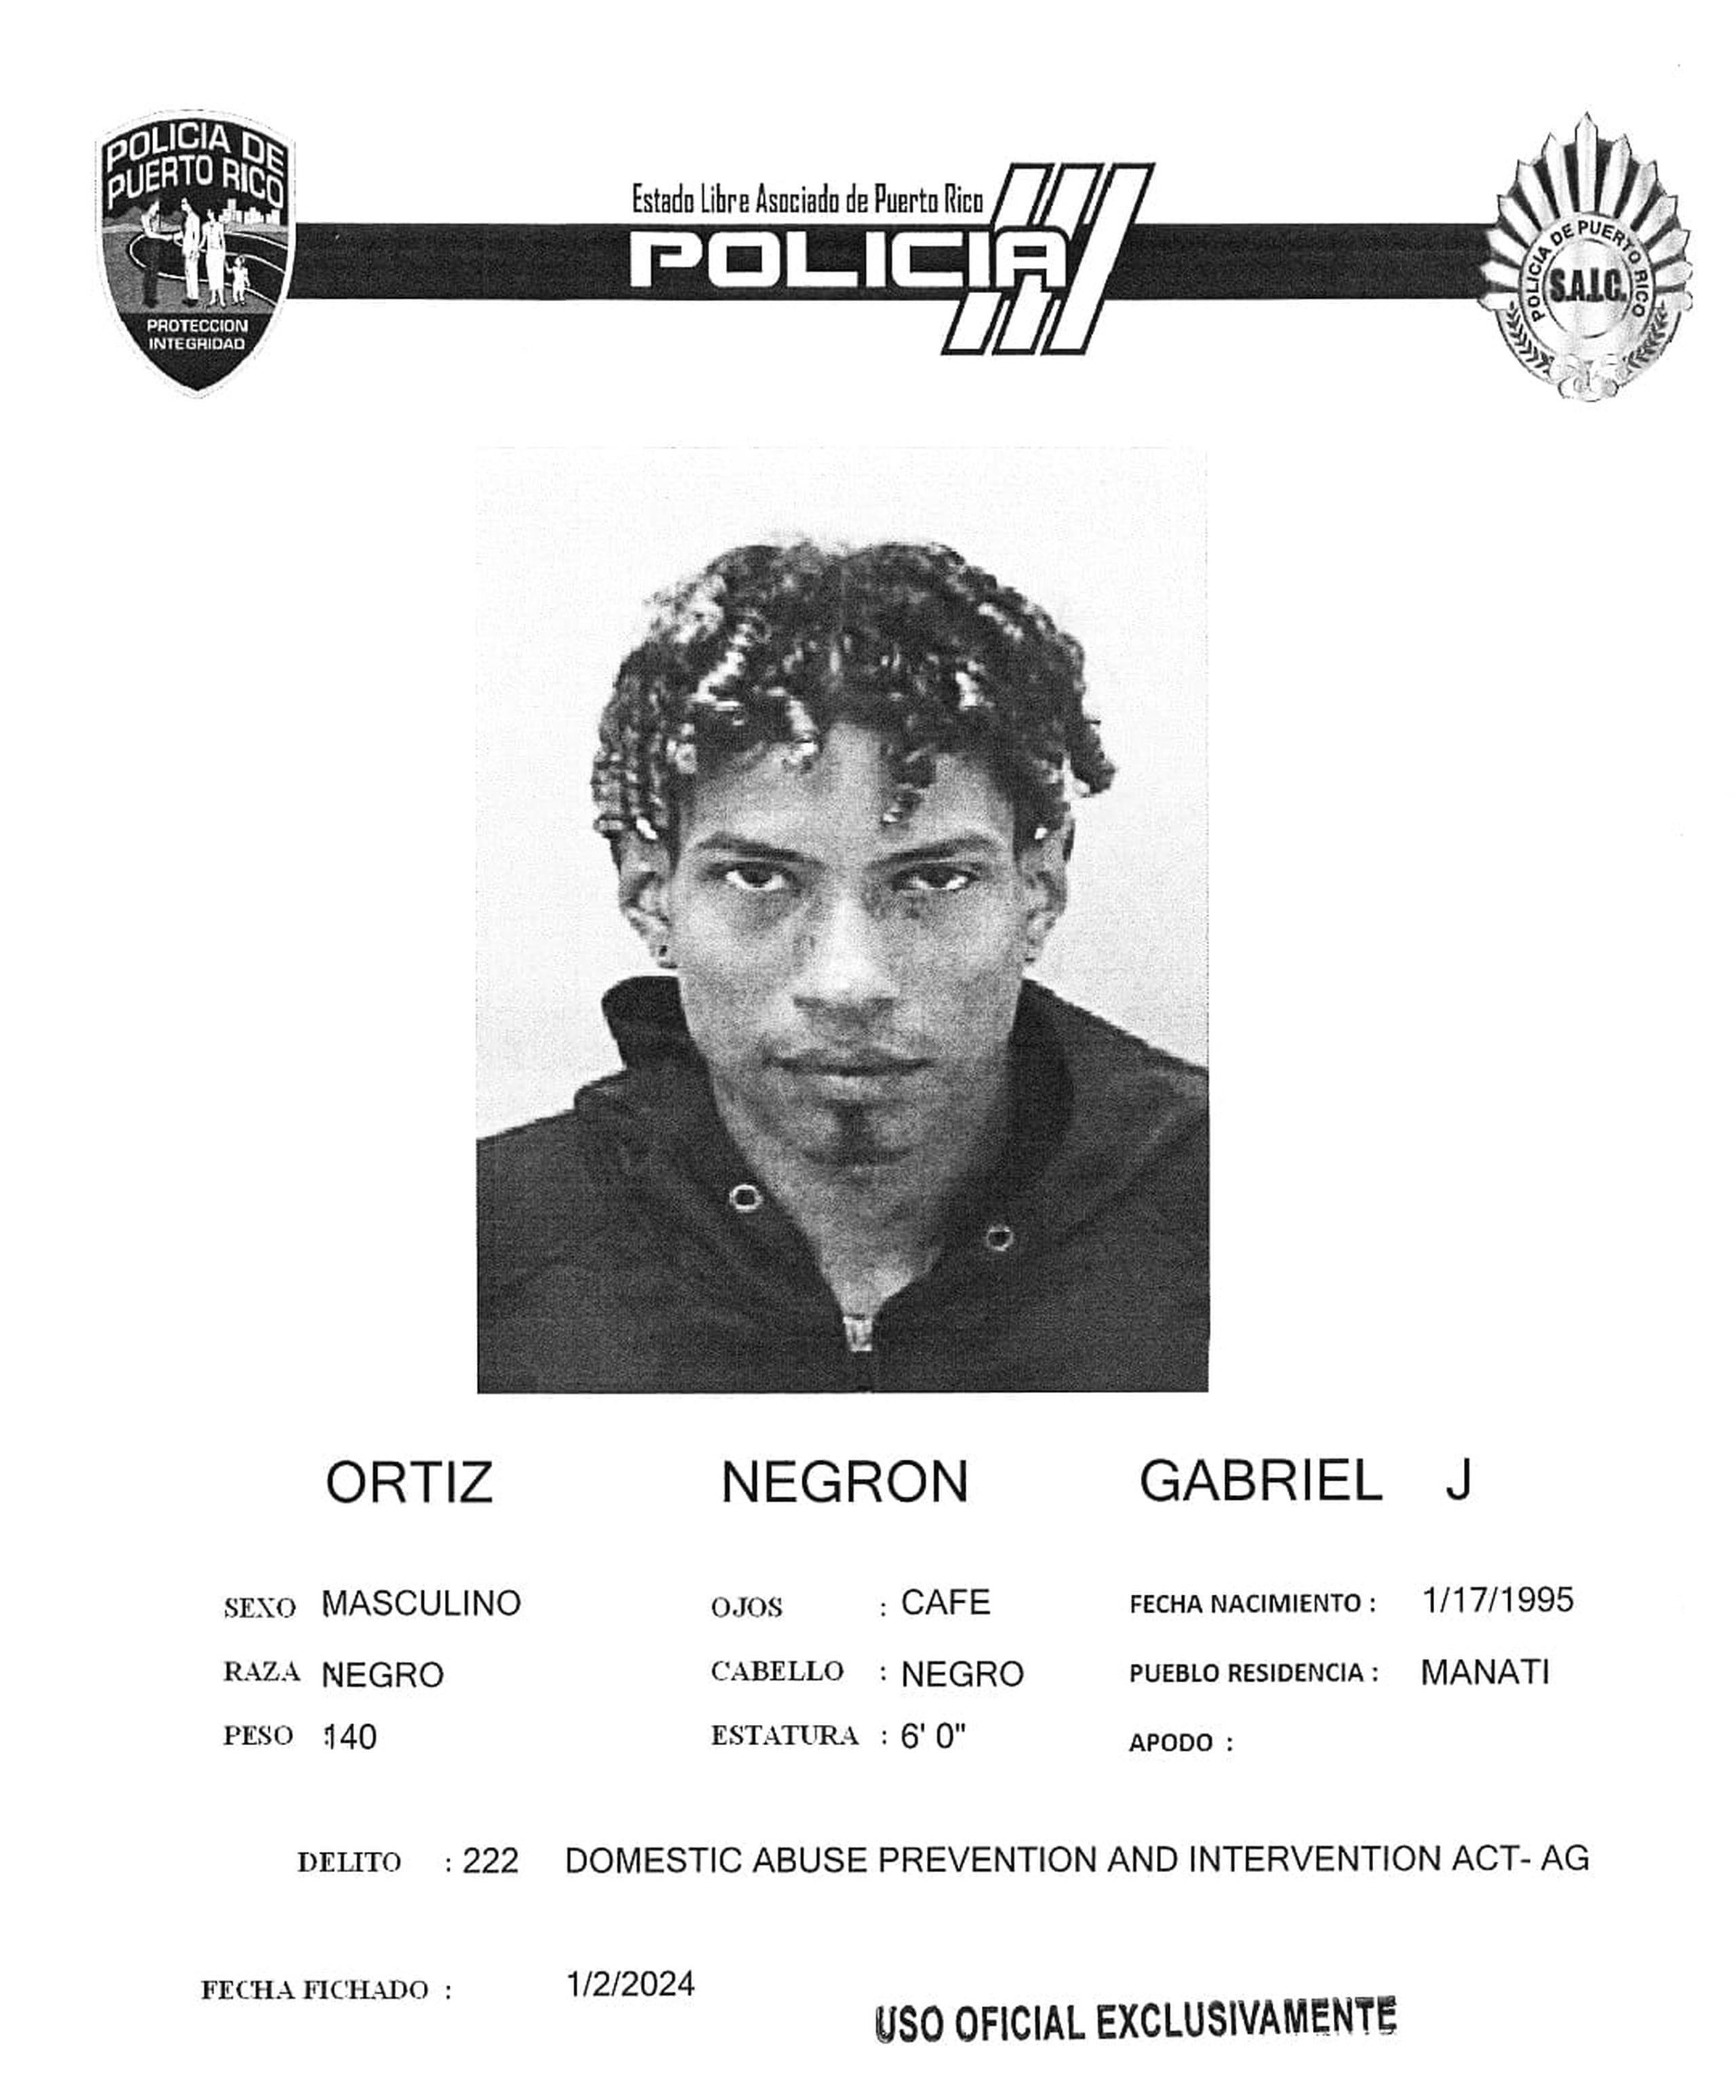 Gabriel J. Ortiz Negrón enfrenta un cargo por maltrato agravado contra su pareja consensual.